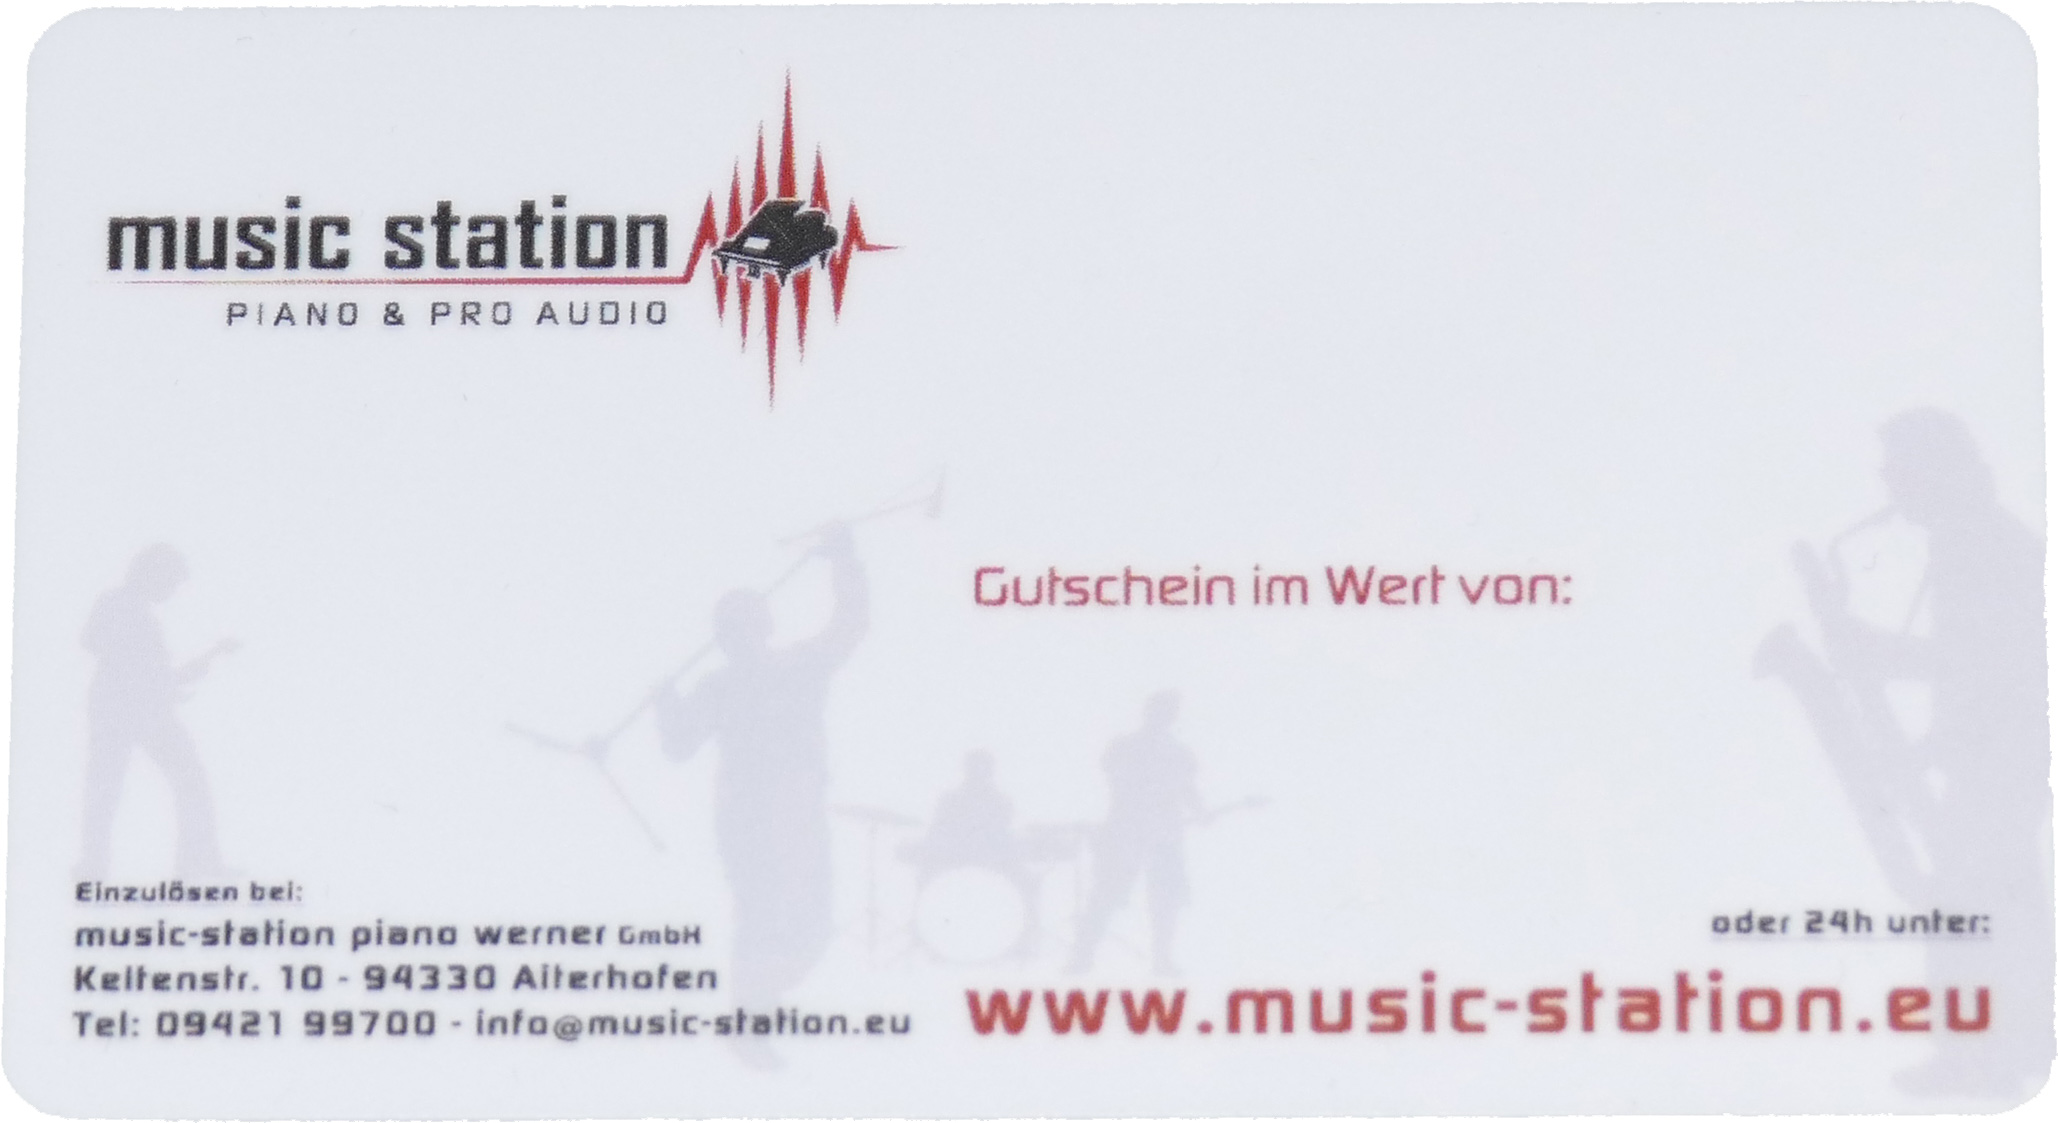 Music Station Gutschein 1000 Euro